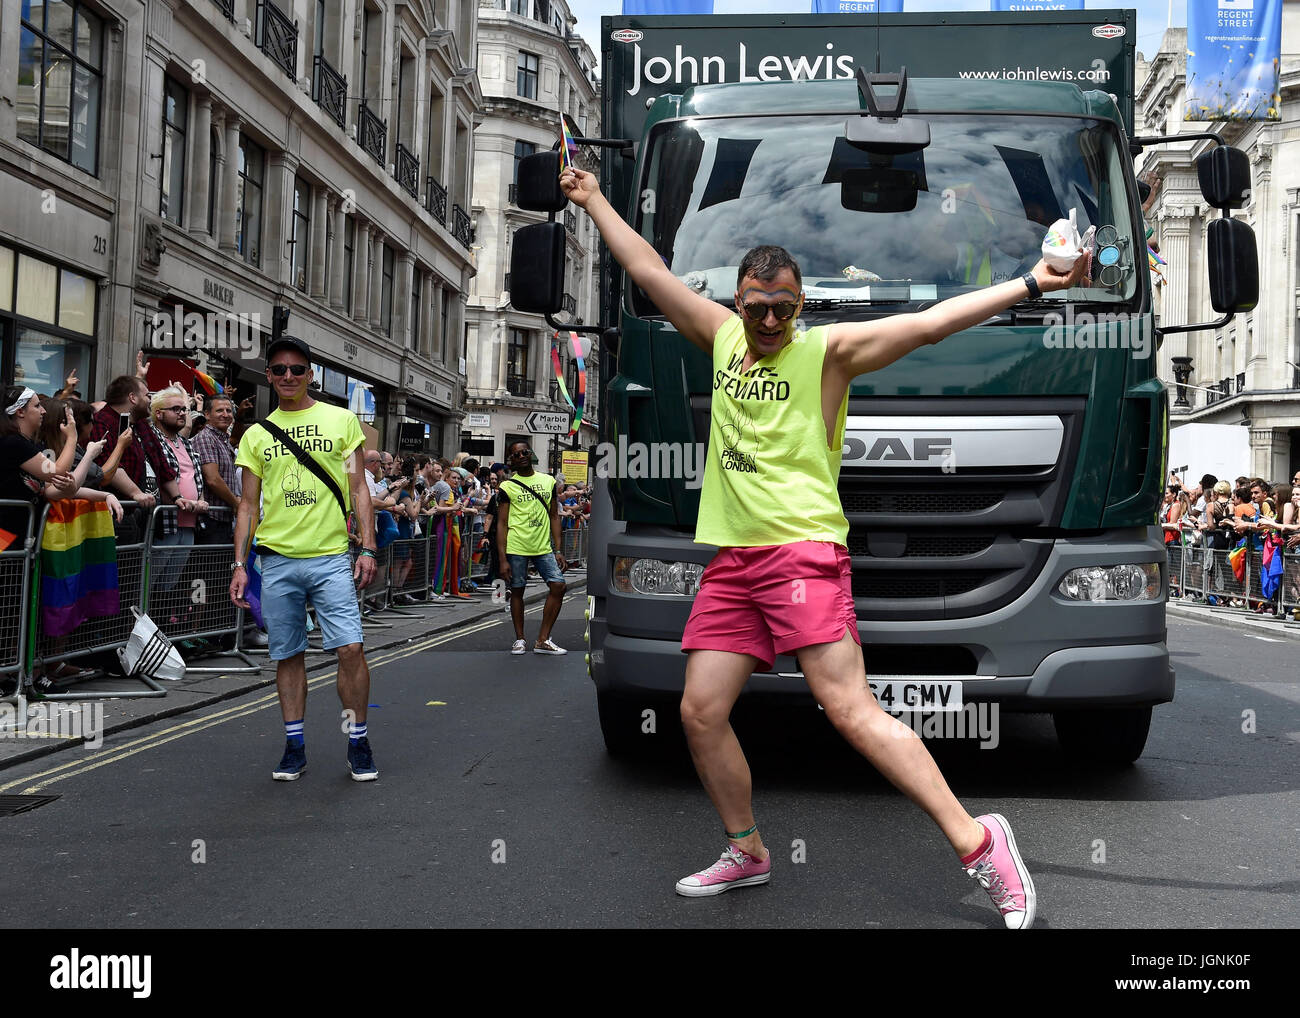 Londres, Reino Unido. 08 de julio, 2017. Una rueda Steward bailó durante el orgullo en Londres el sábado. Foto : G Taka Taka Crédito: Wu Wu/Alamy Live News Foto de stock